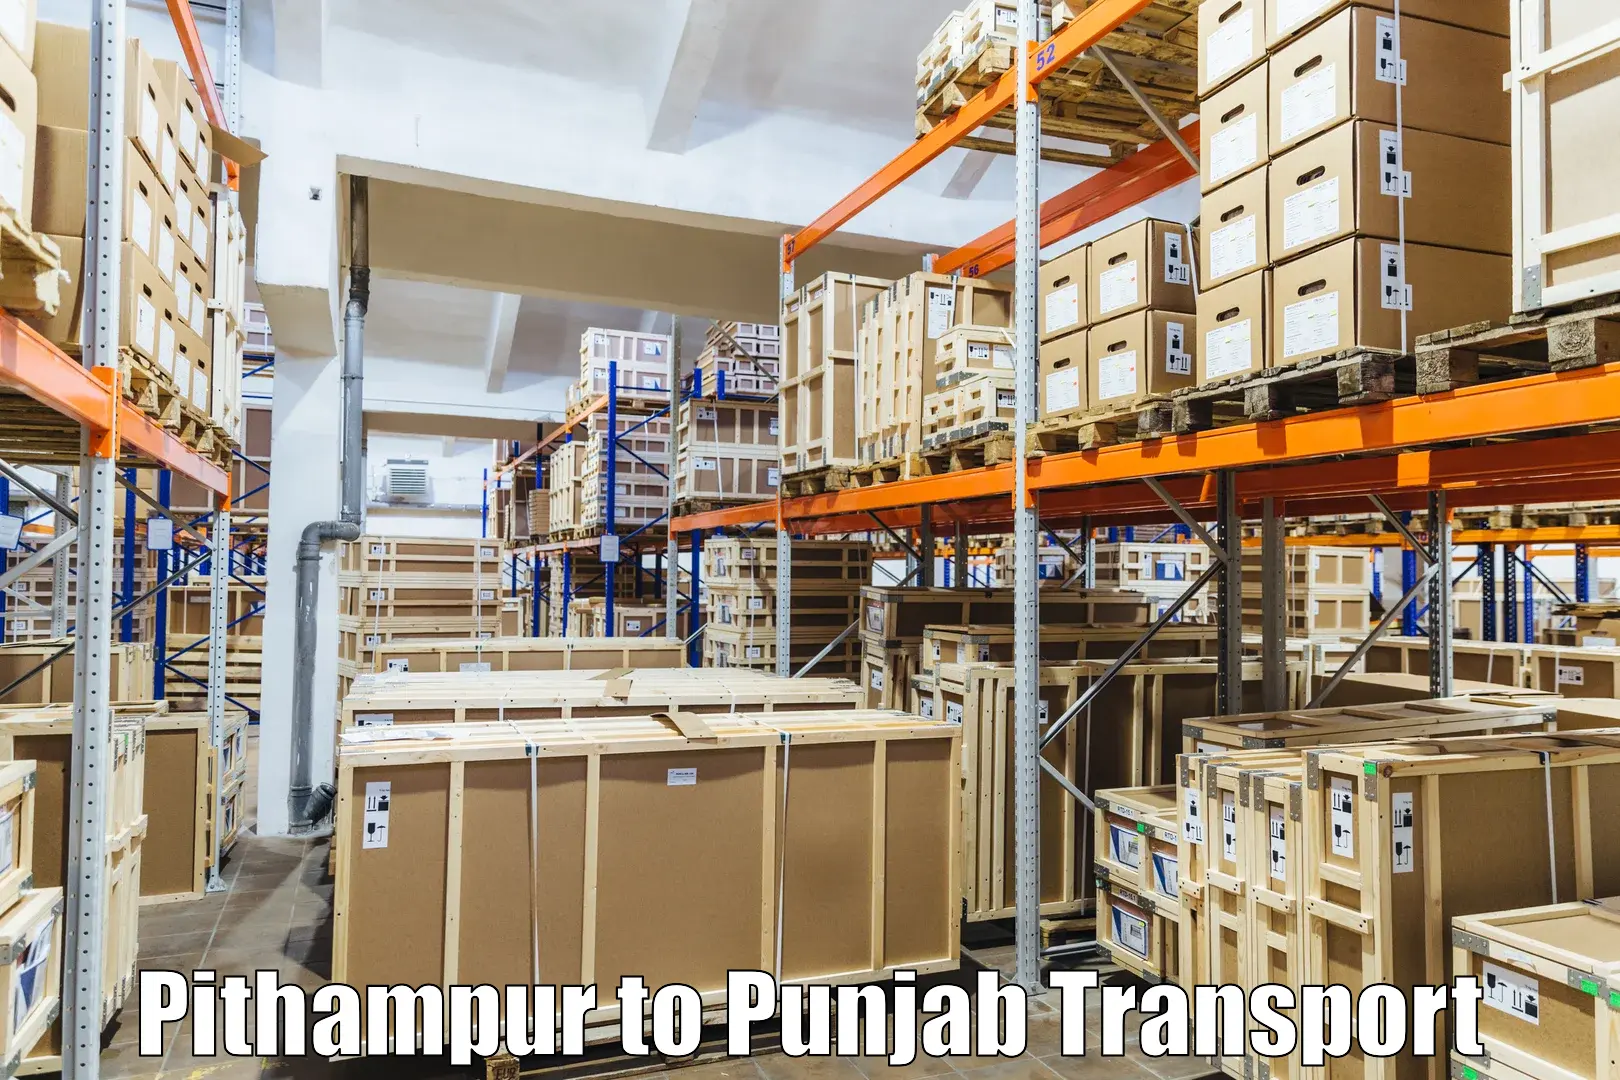 Shipping partner Pithampur to Amritsar